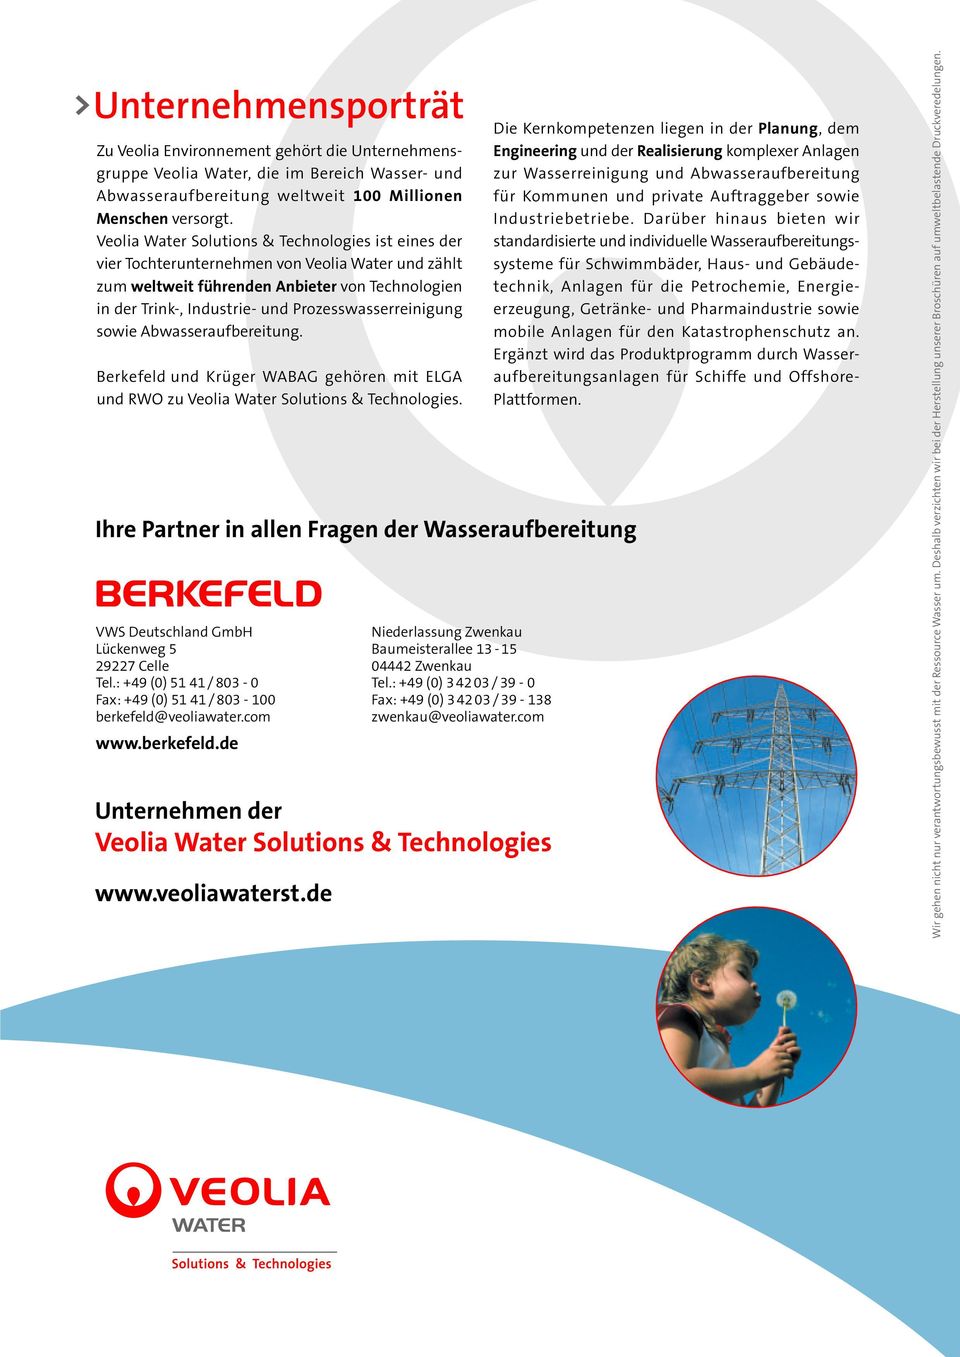 Prozesswasserreinigung sowie Abwasseraufbereitung. Berkefeld und Krüger WABAG gehören mit ELGA und RWO zu Veolia Water Solutions & Technologies.